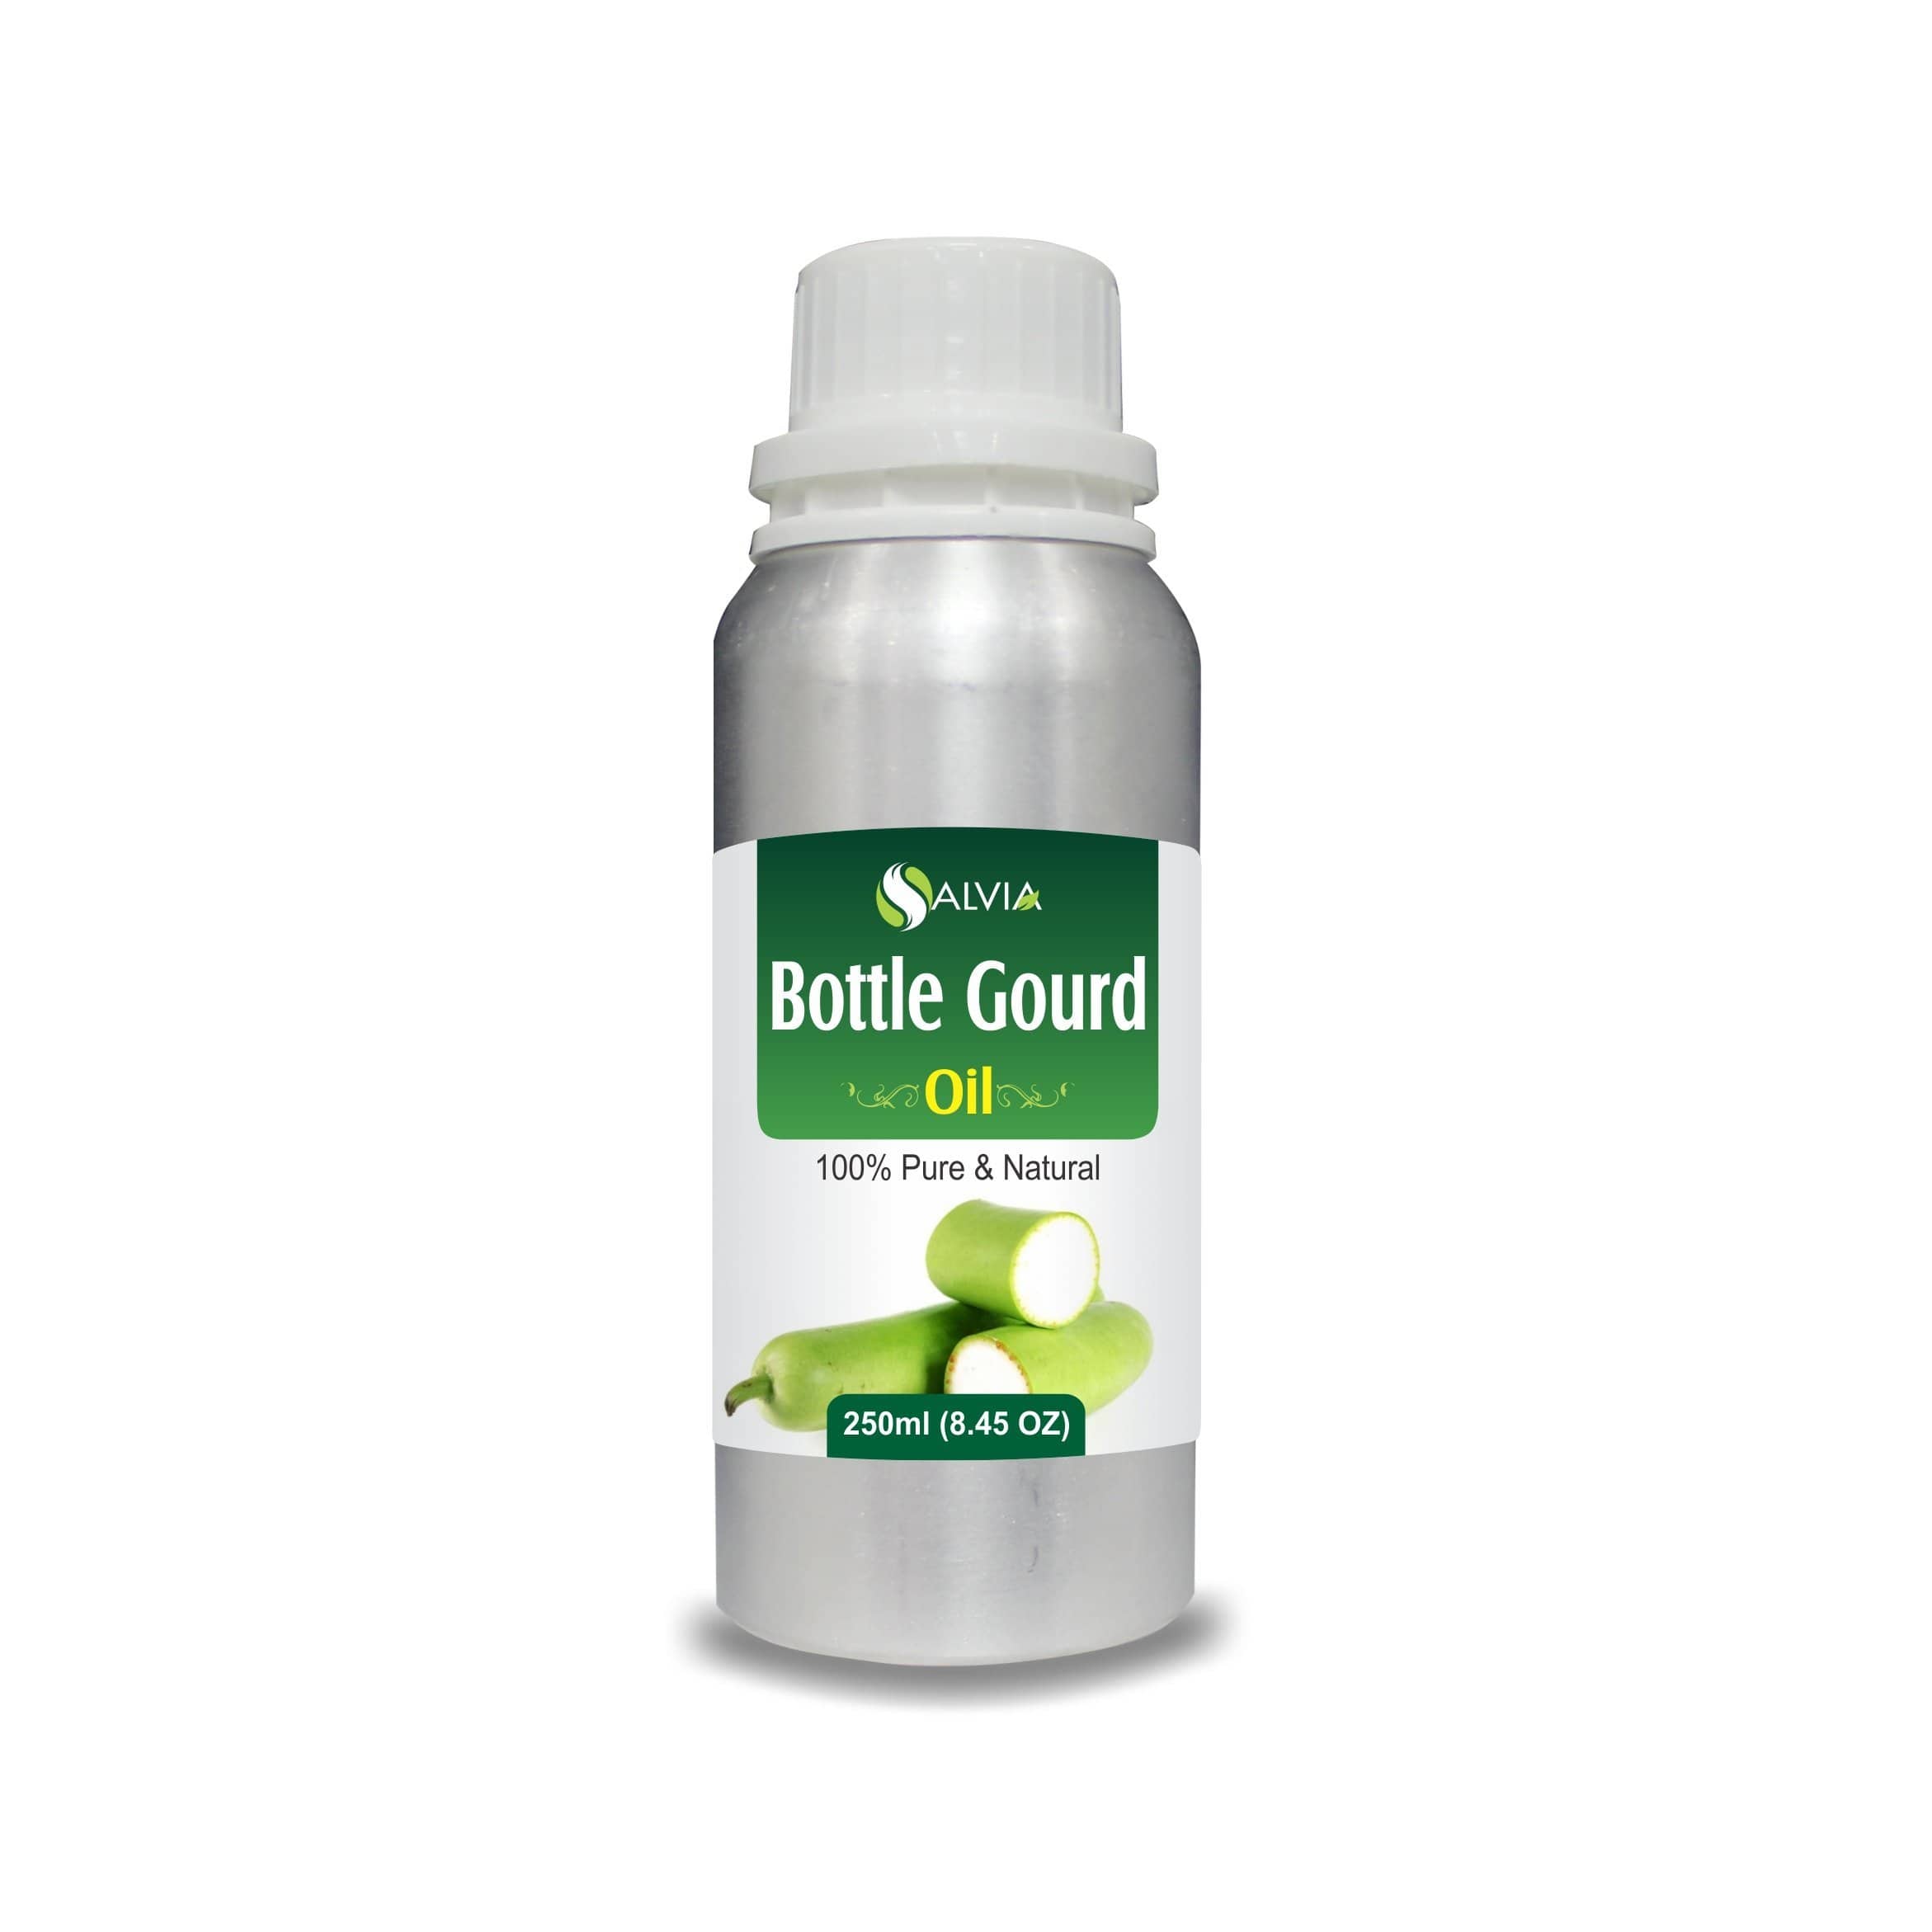 bottle gourd oil benefits for hair